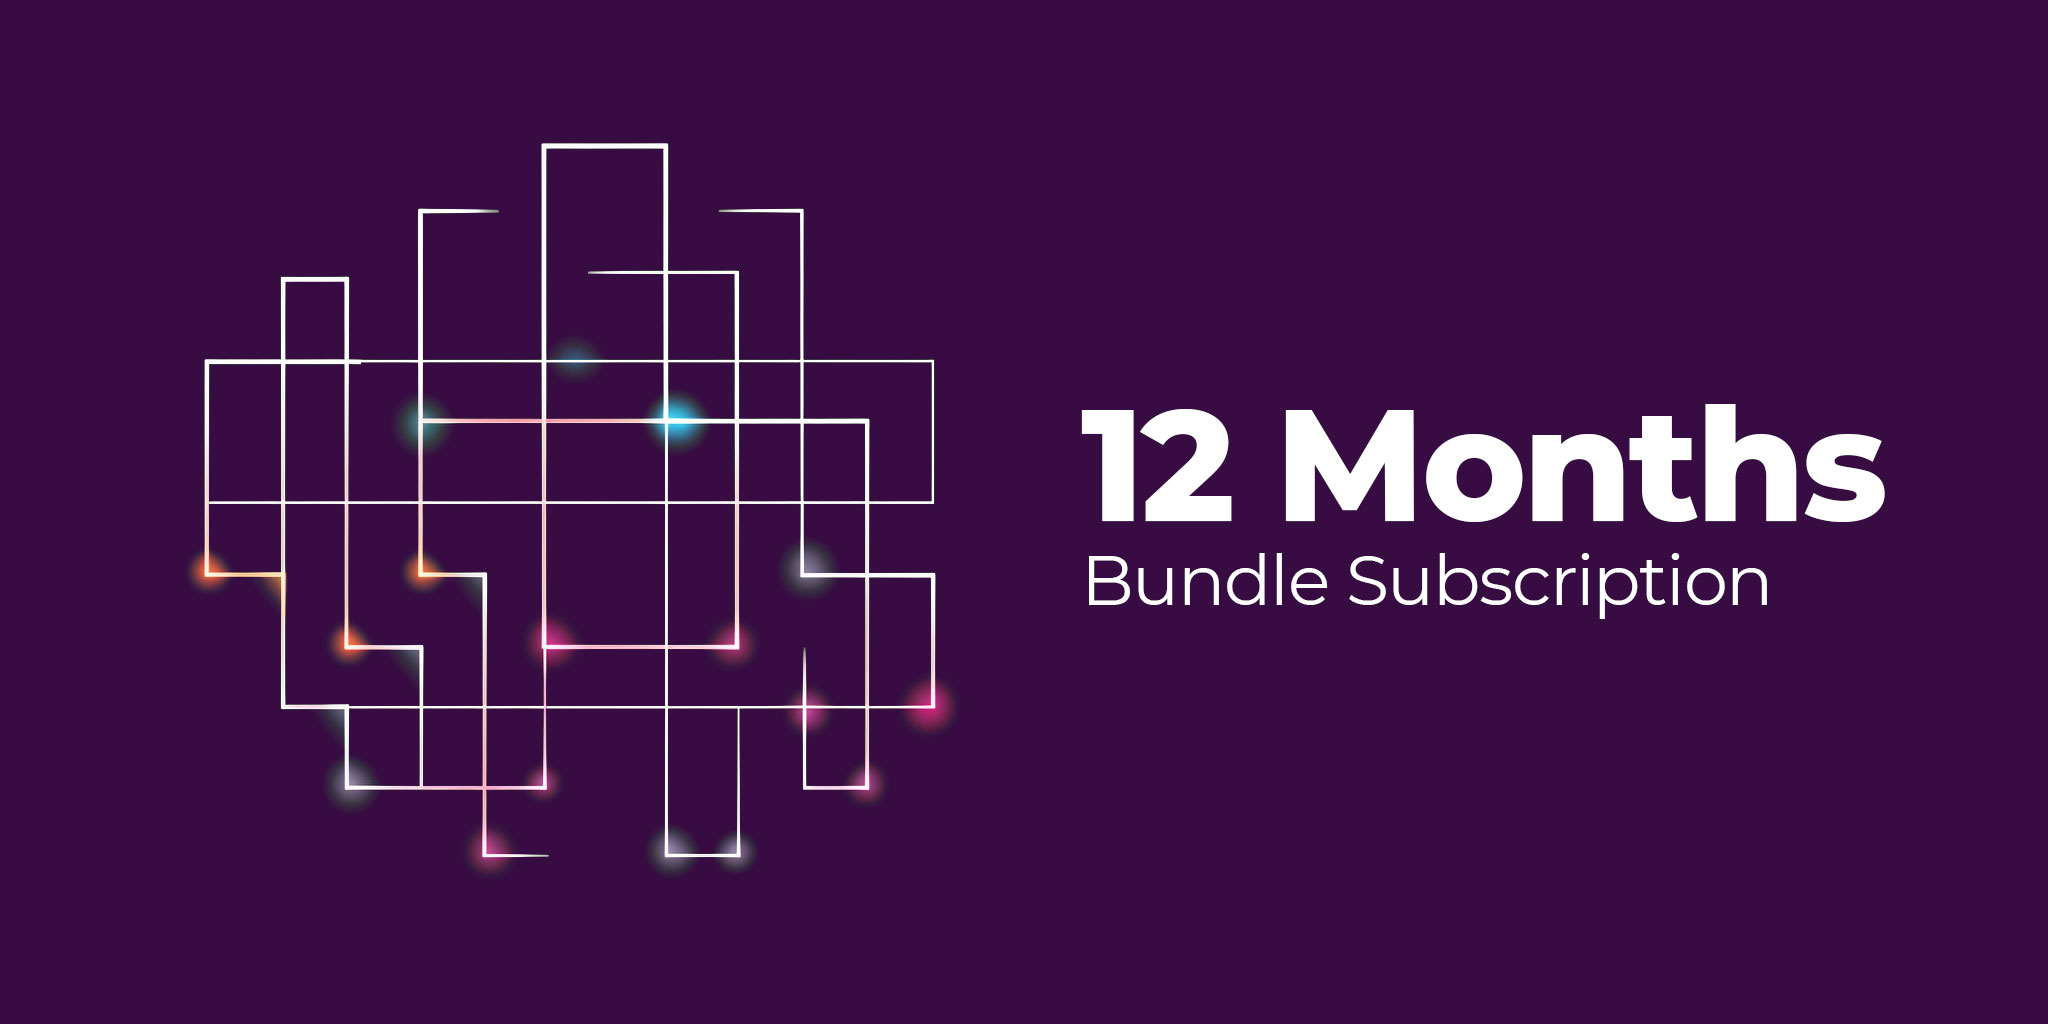 12 Months - Bundle Subscription